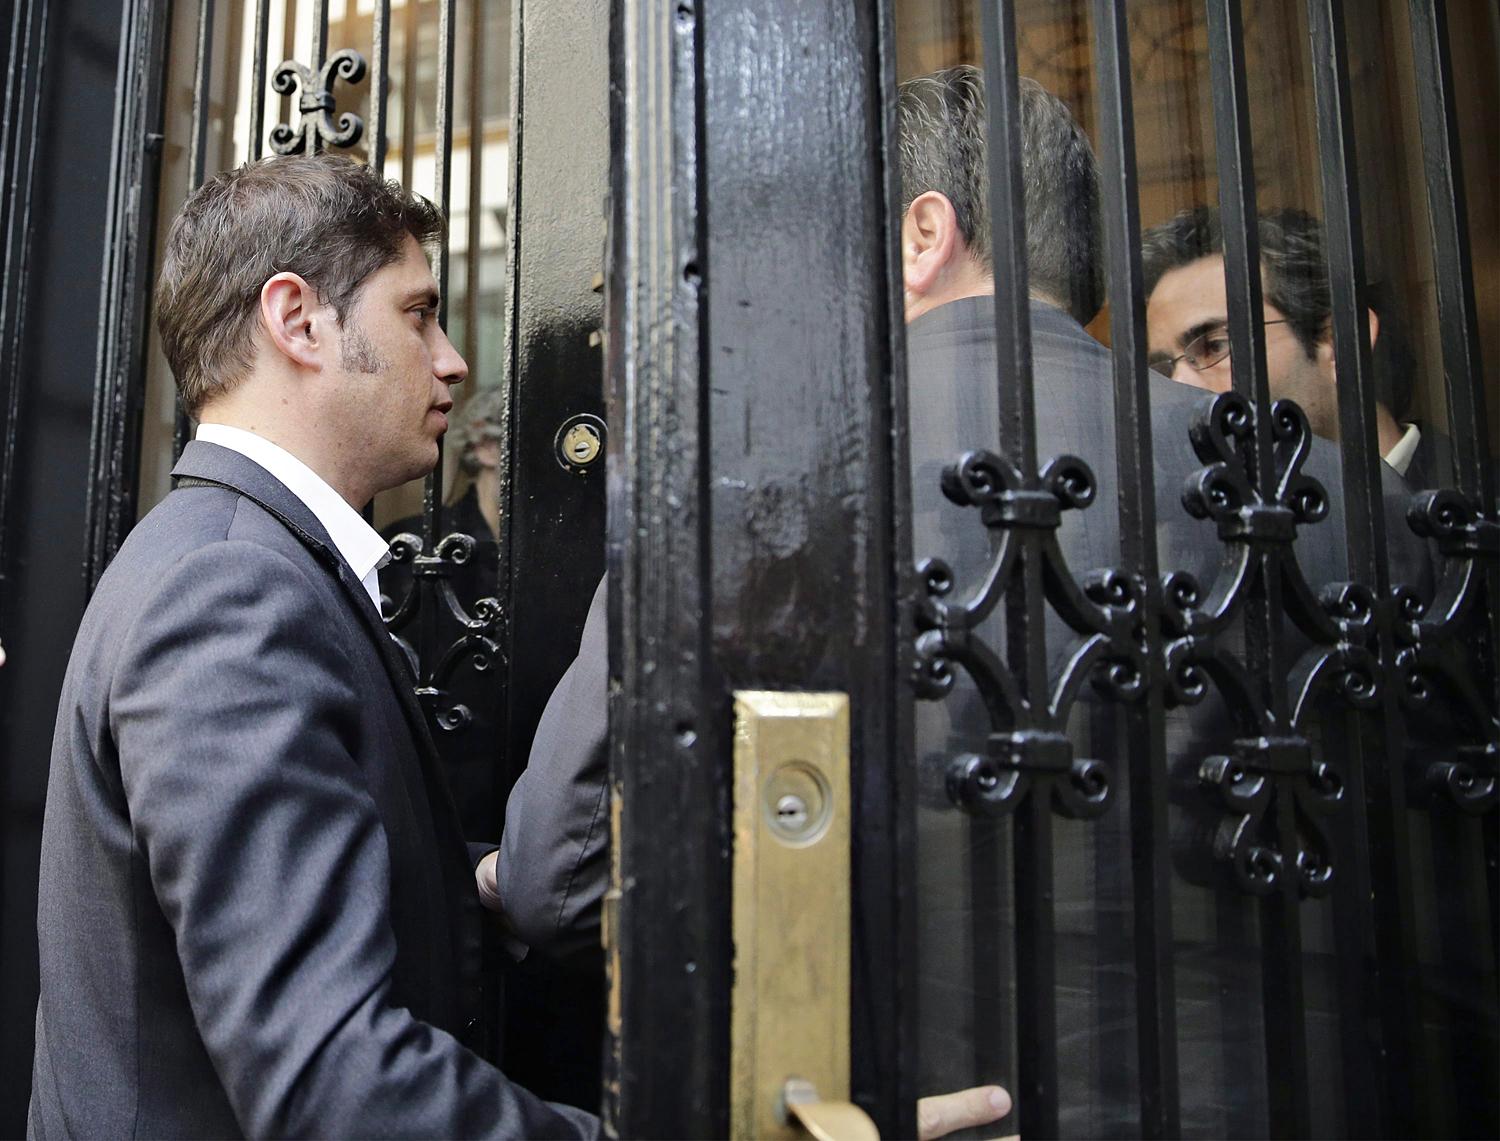 Kicillof gazdasági miniszter az eredménytelen tárgyalásokat követően Argentína New York-i konzulátusára érkezik